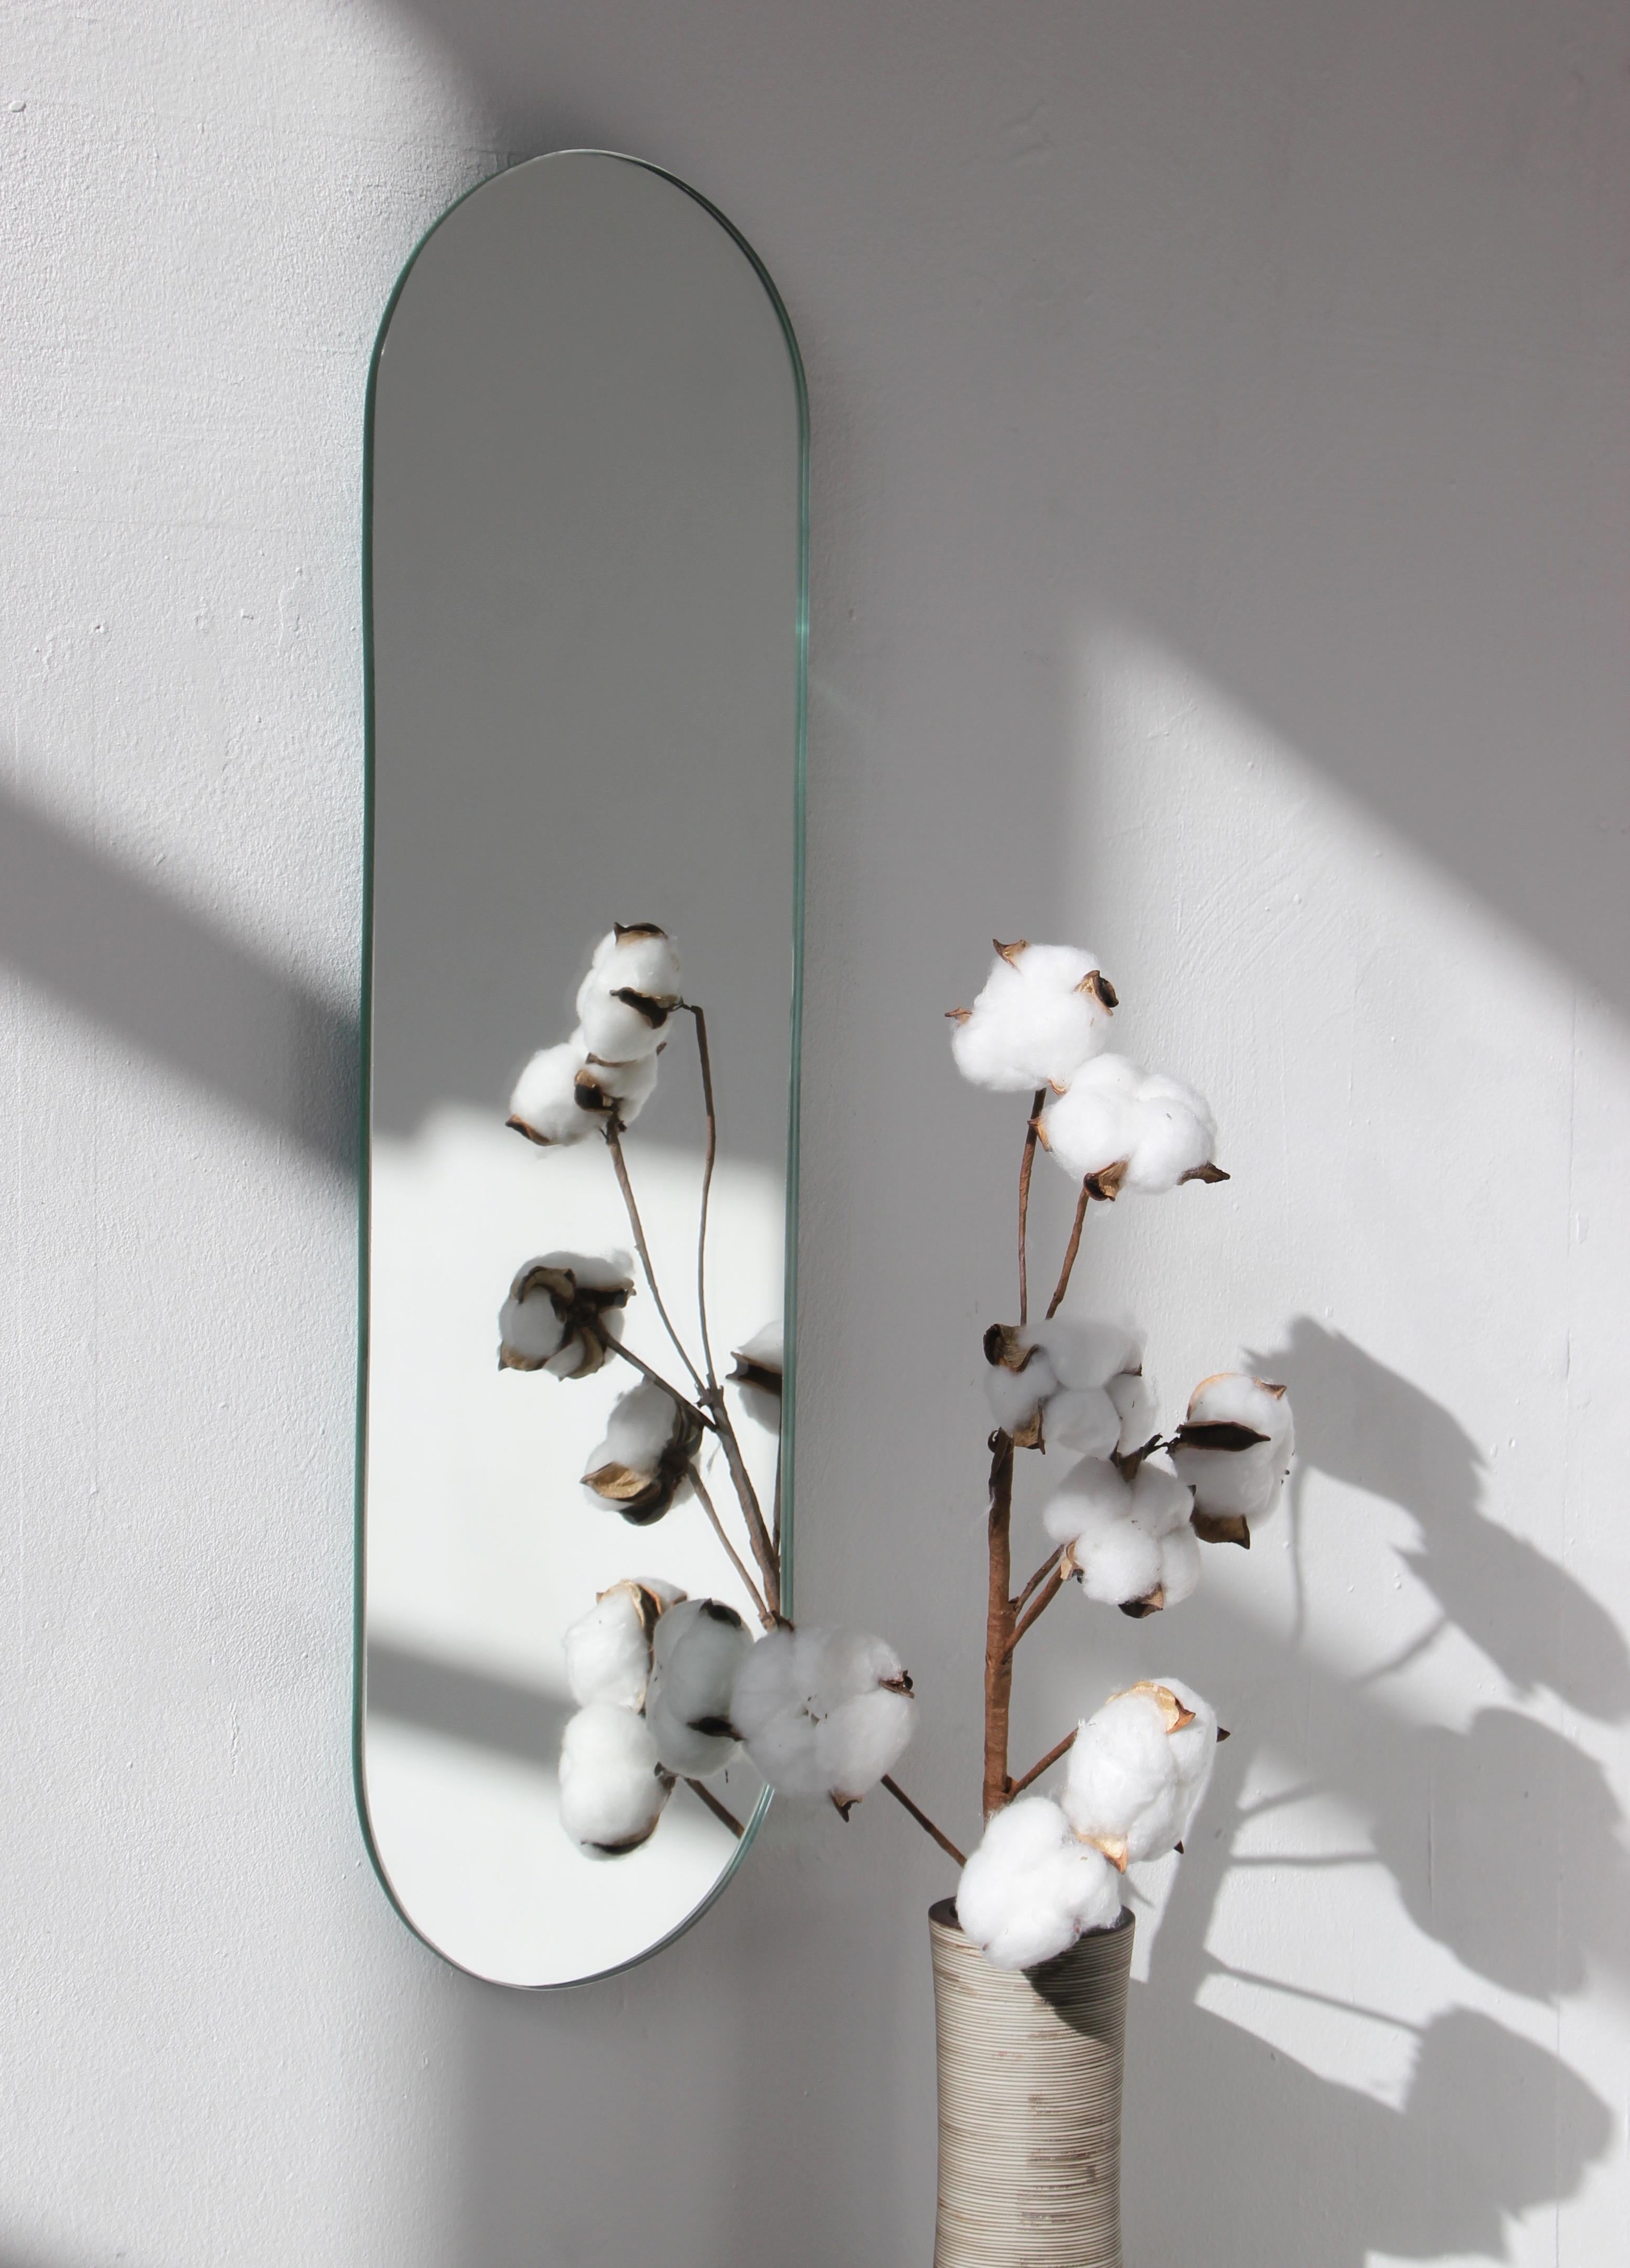 Miroir sans cadre en forme de capsule minimaliste. Un design de qualité qui garantit que le miroir est parfaitement parallèle au mur. Conçu et fabriqué à Londres, au Royaume-Uni.

Equipé de plaques professionnelles non visibles une fois installé